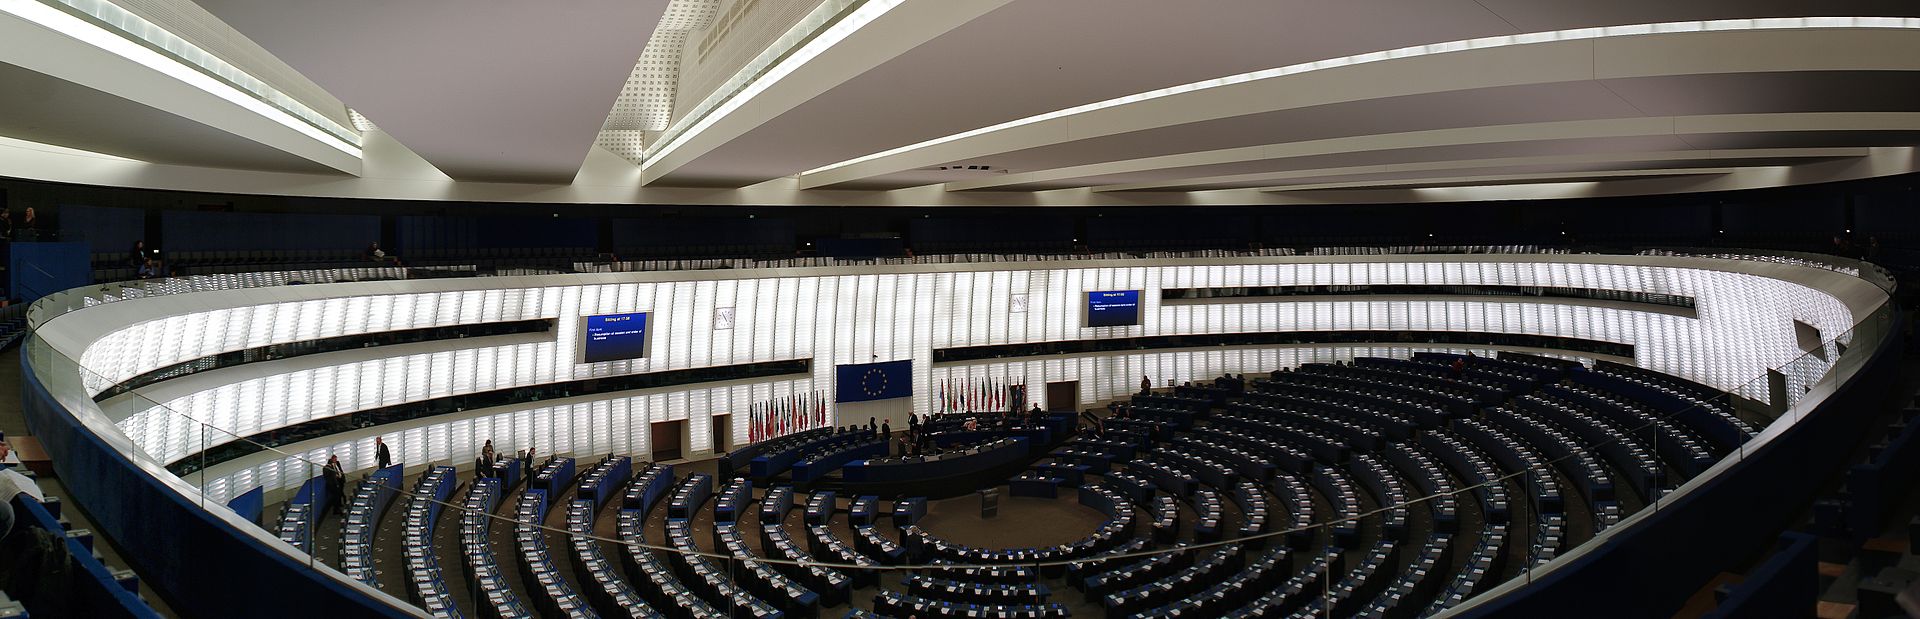 مبارزه با فساد در اتحادیه اروپا: هدایایِ شفافِ پارلمان اتحادیه اروپا (دوره هشتم)